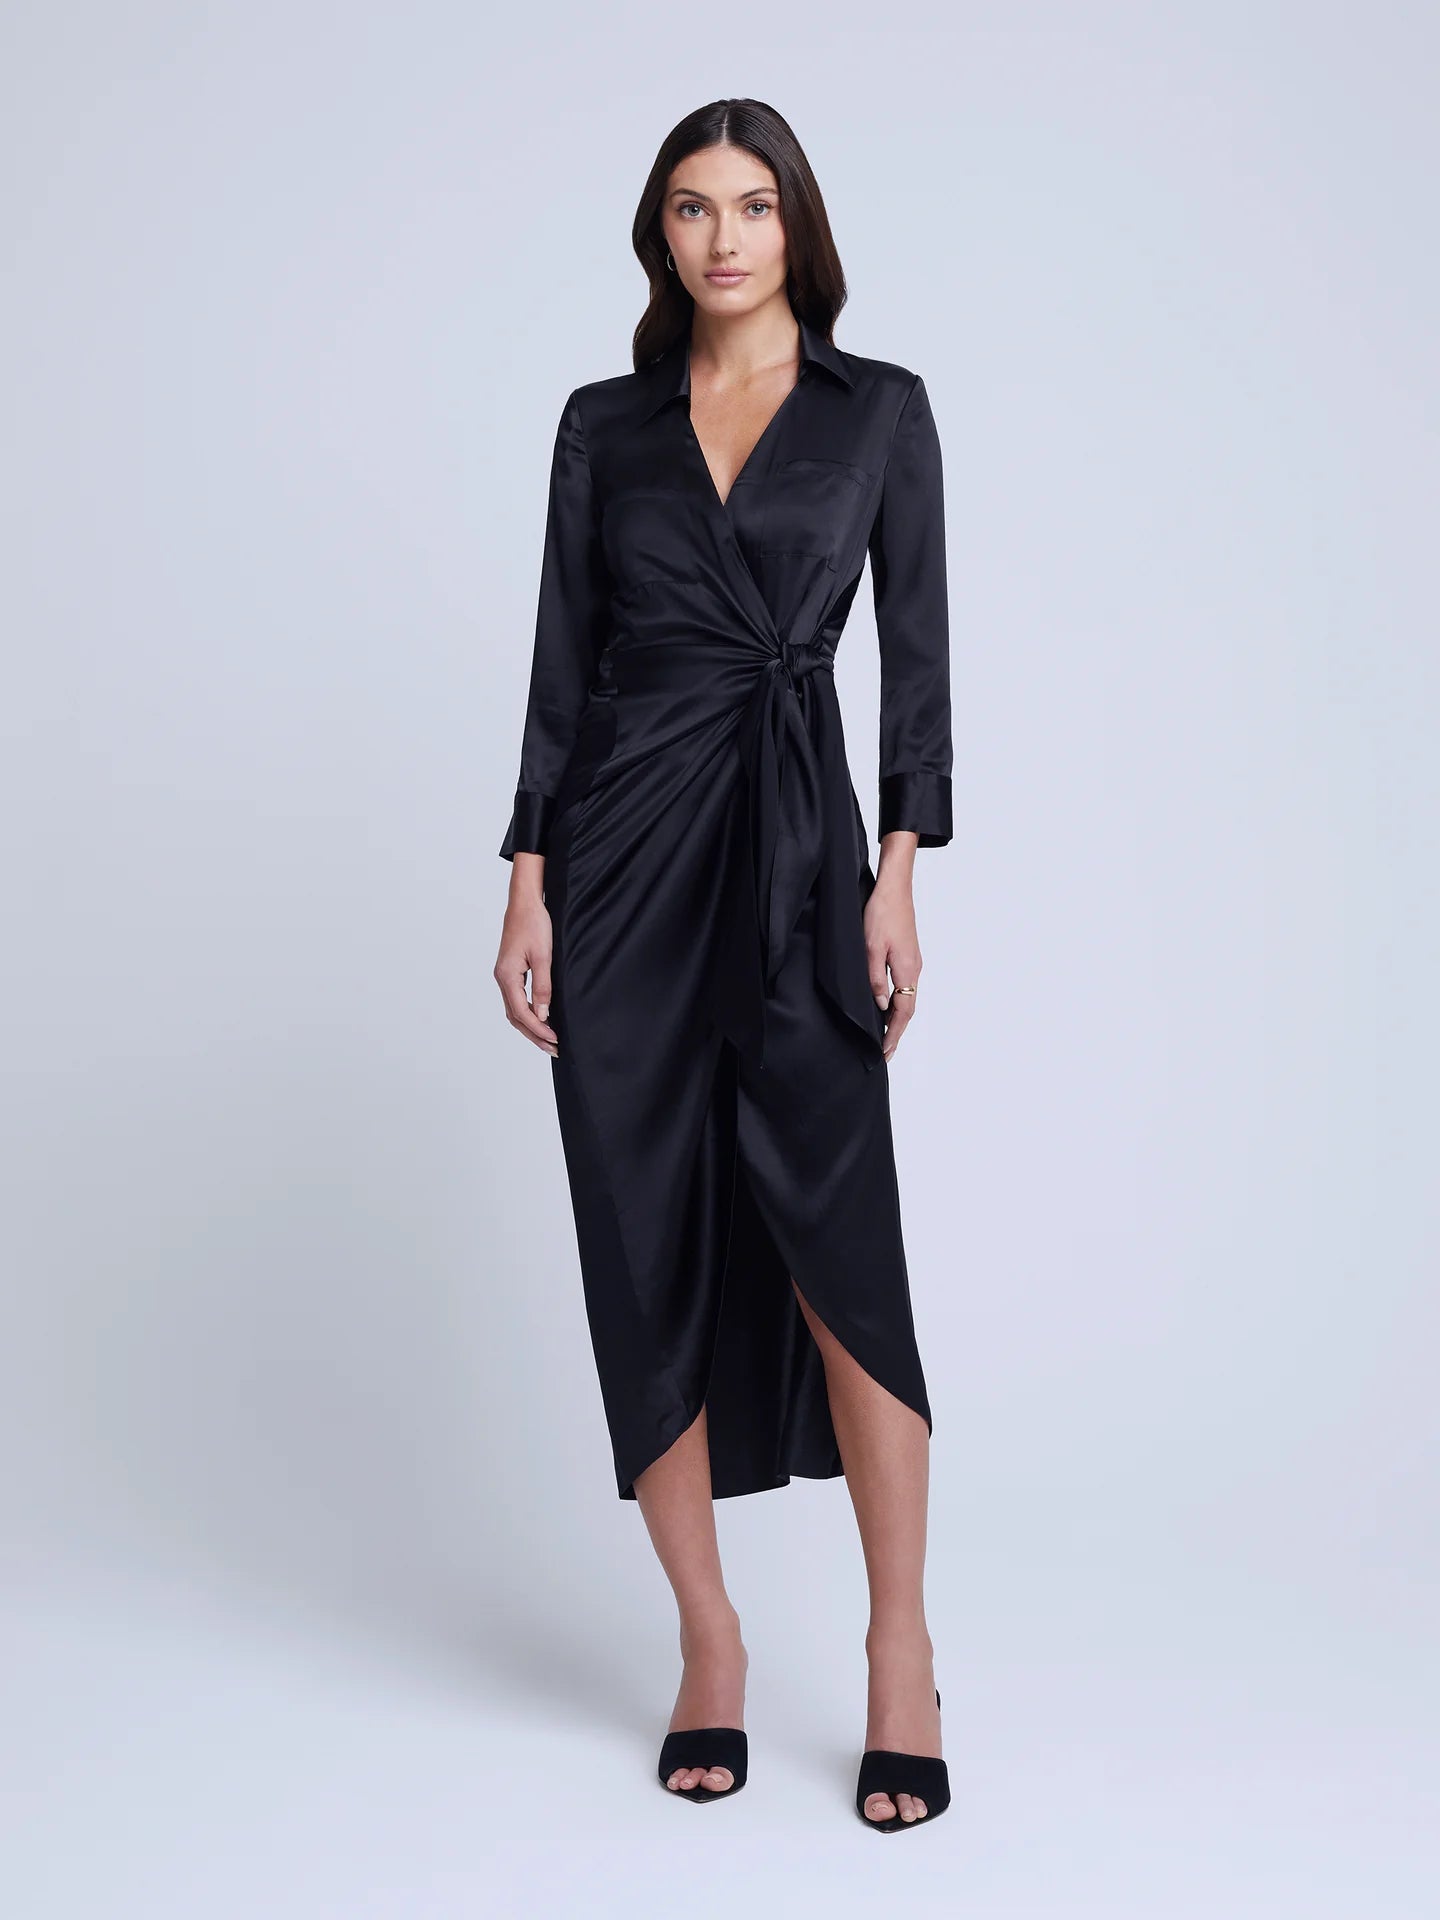 L’Agence - Kadi Long Wrap Dress - Black